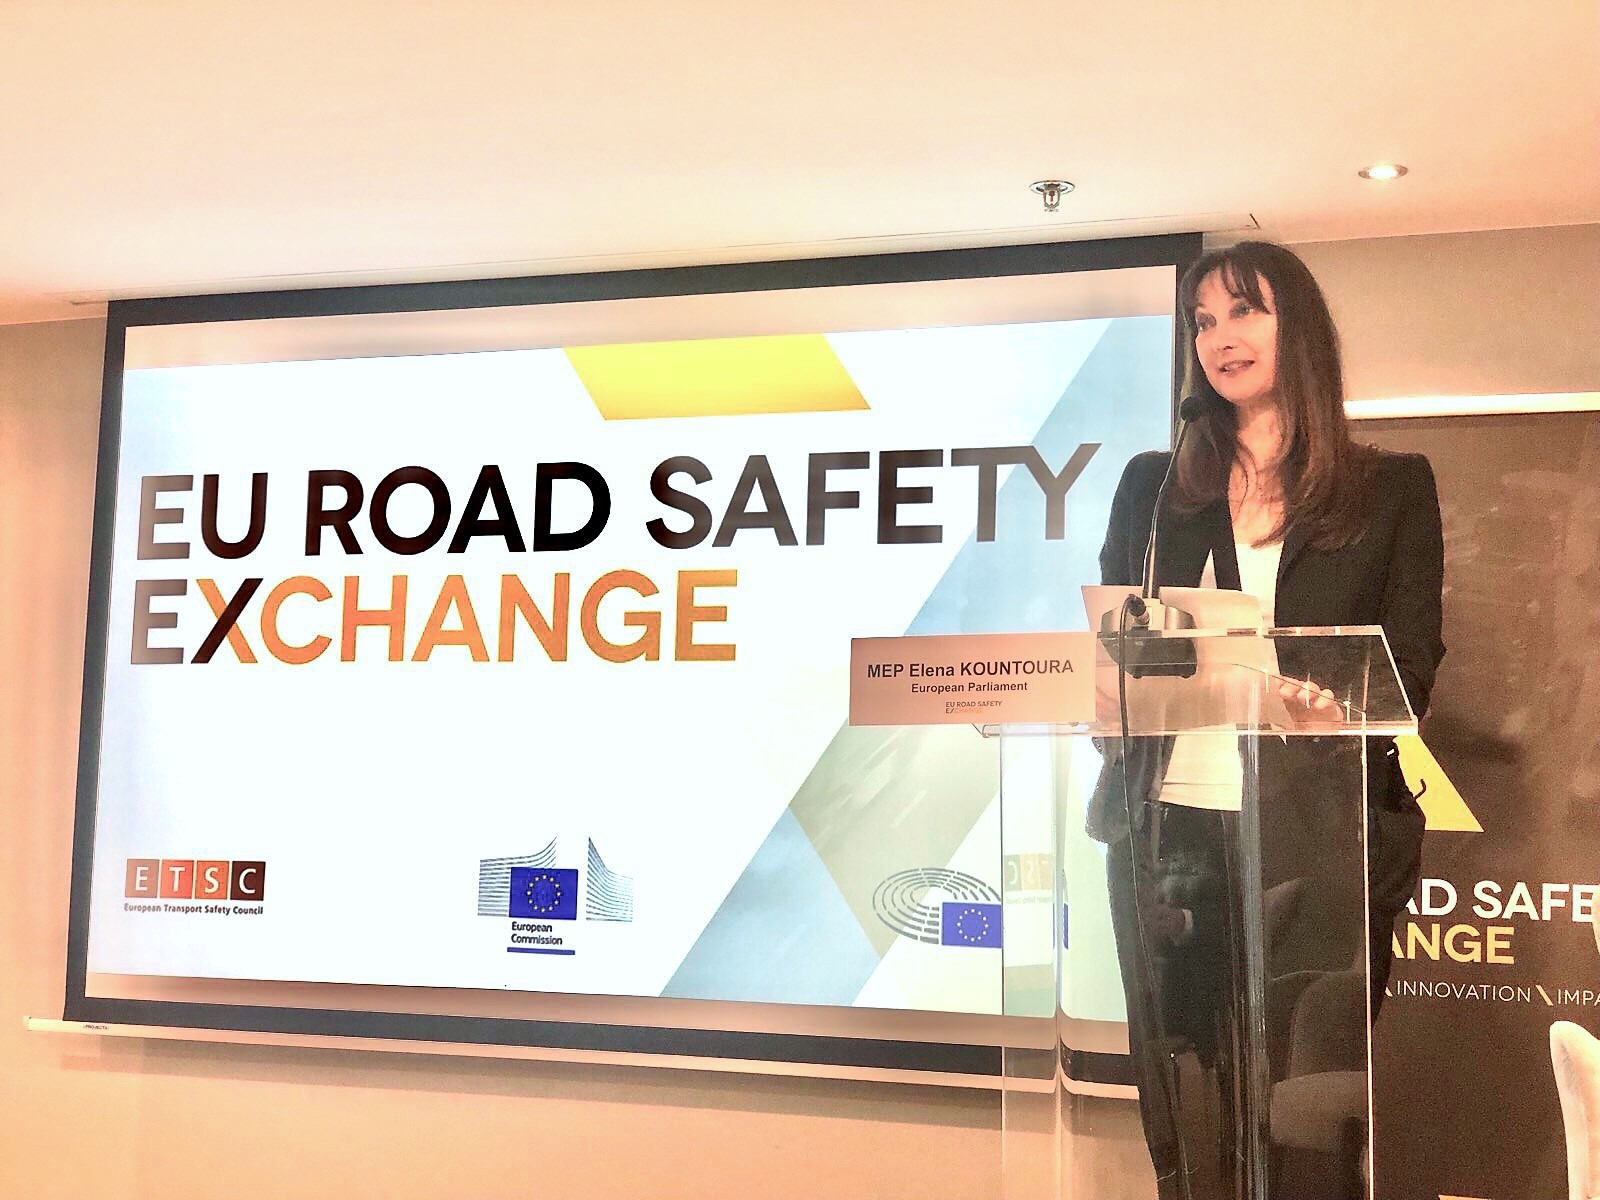 Σημαντική επιτυχία για την Ελλάδα η πρωτοβουλία Κουντουρά που εξασφάλισε την επέκταση  του ευρωπαϊκού προγράμματος European Road Safety Exchange